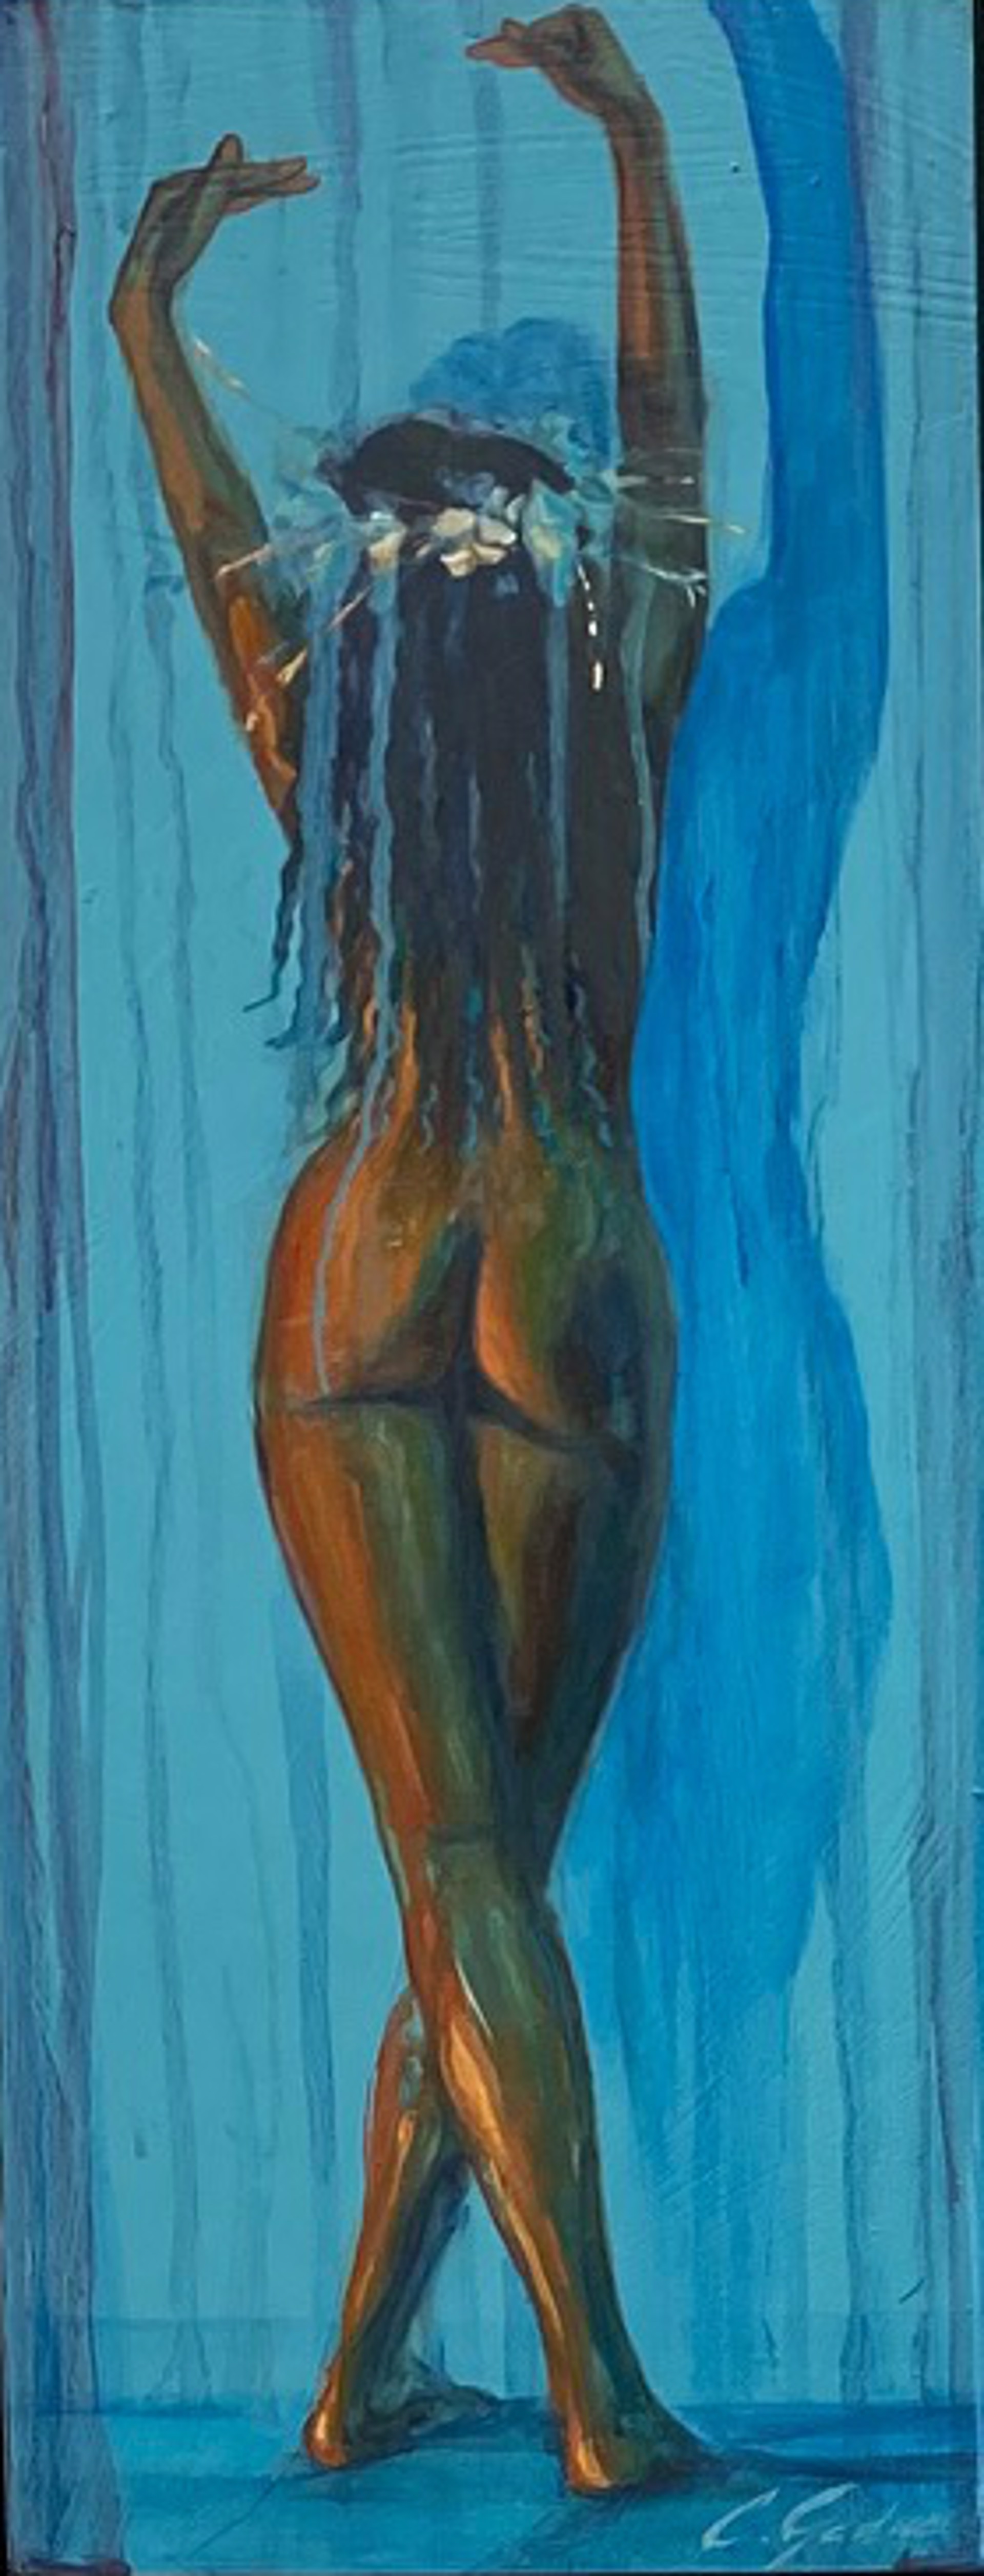 Blue Nude 13 by Carrie Jadus